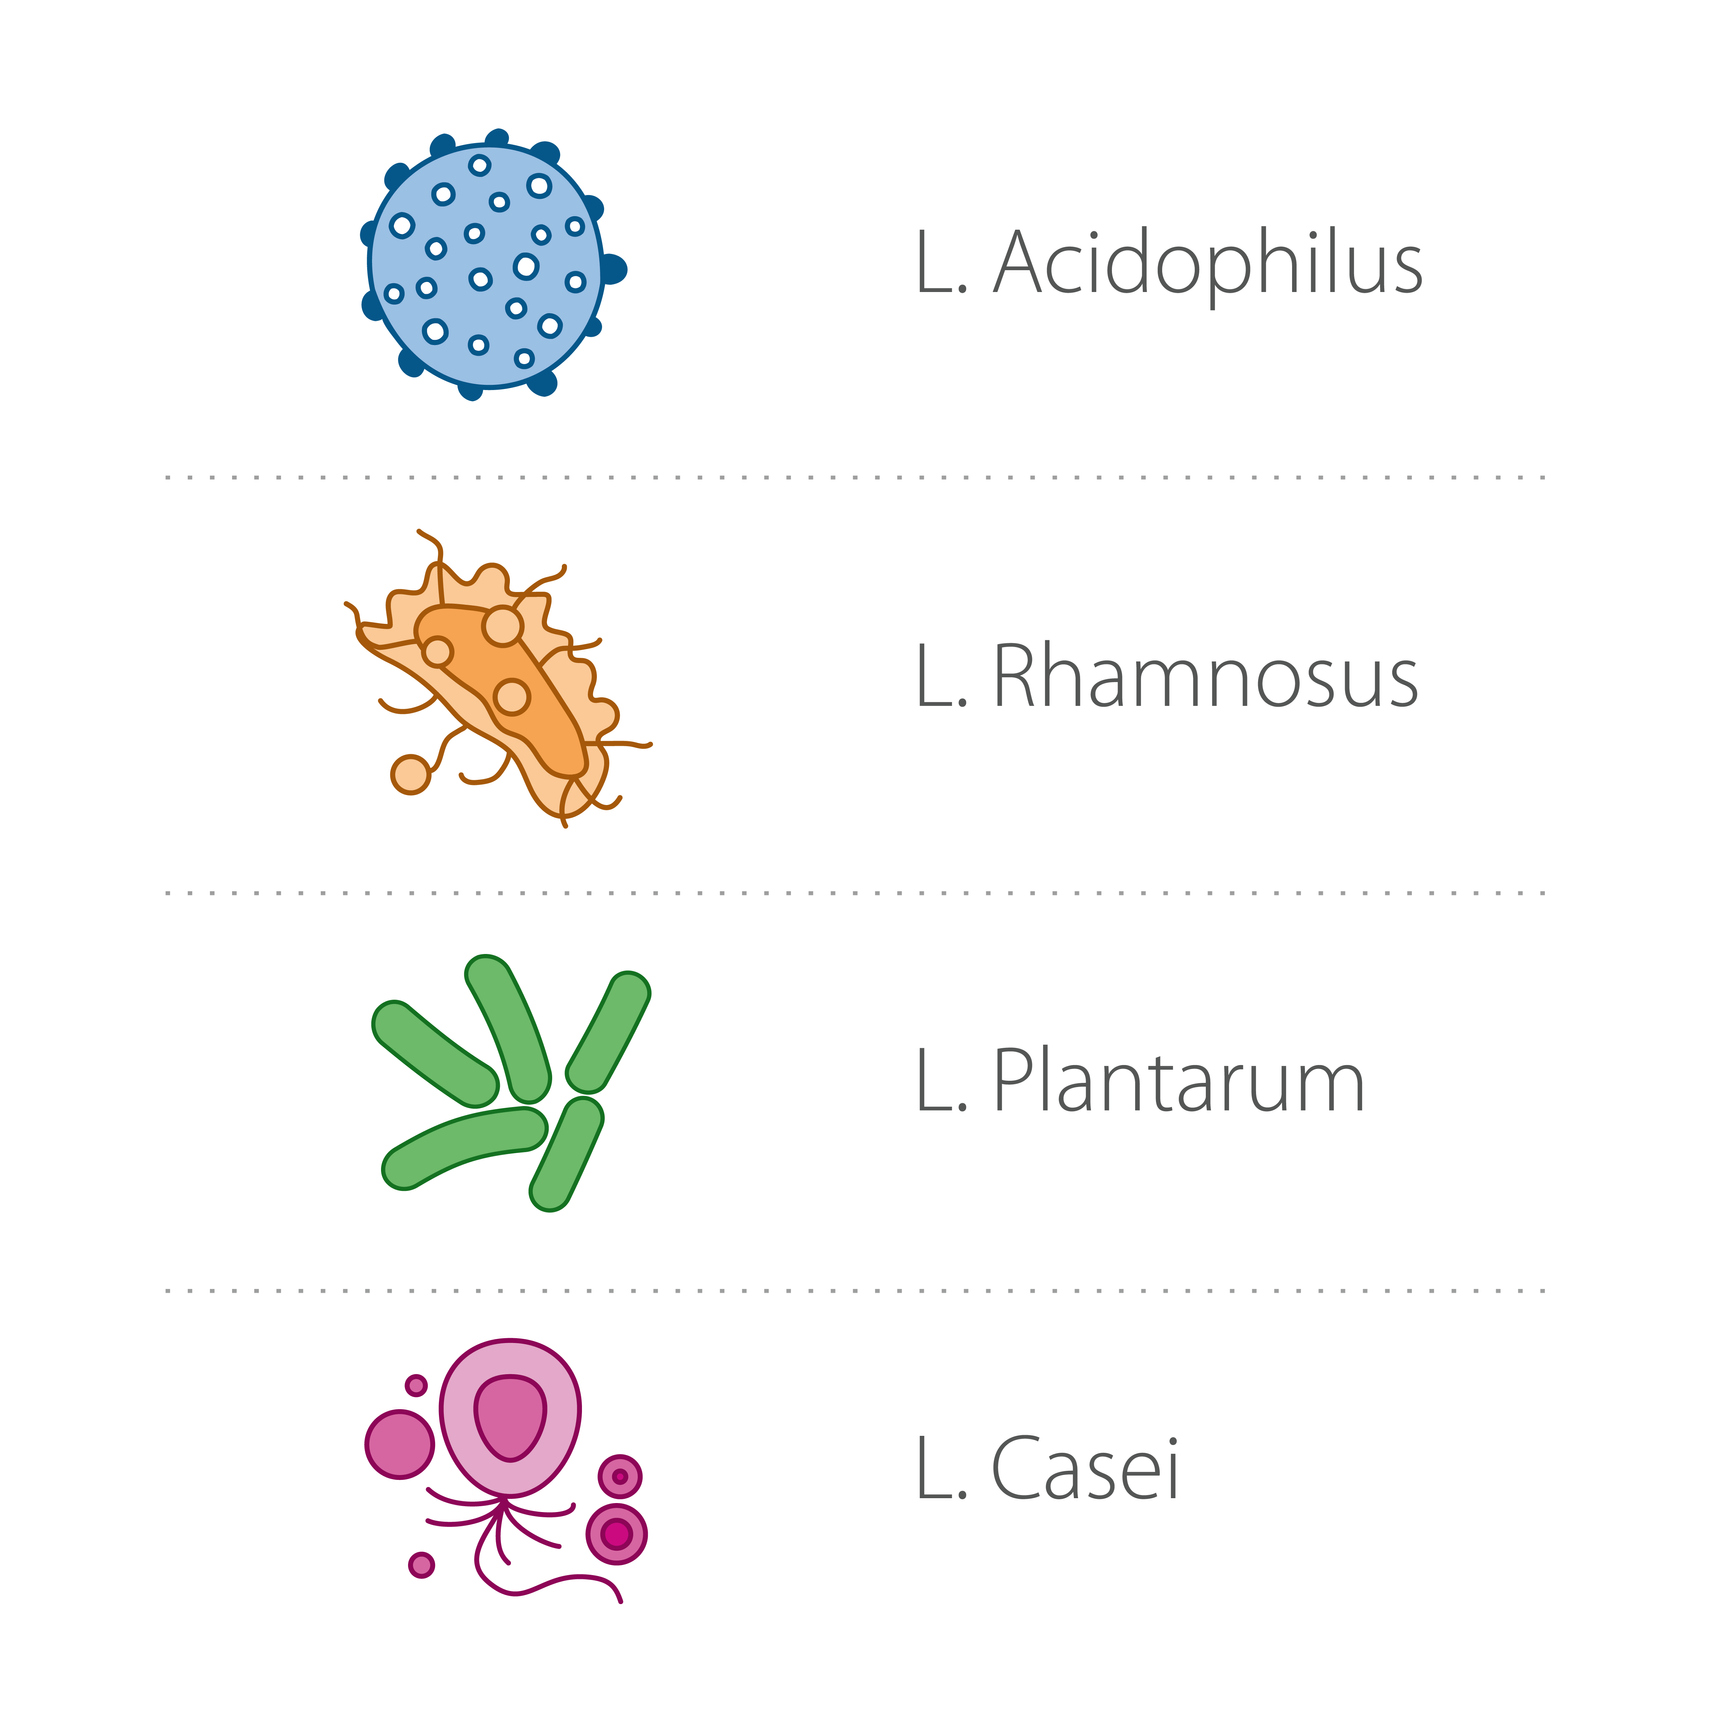 Lactobacilli - species